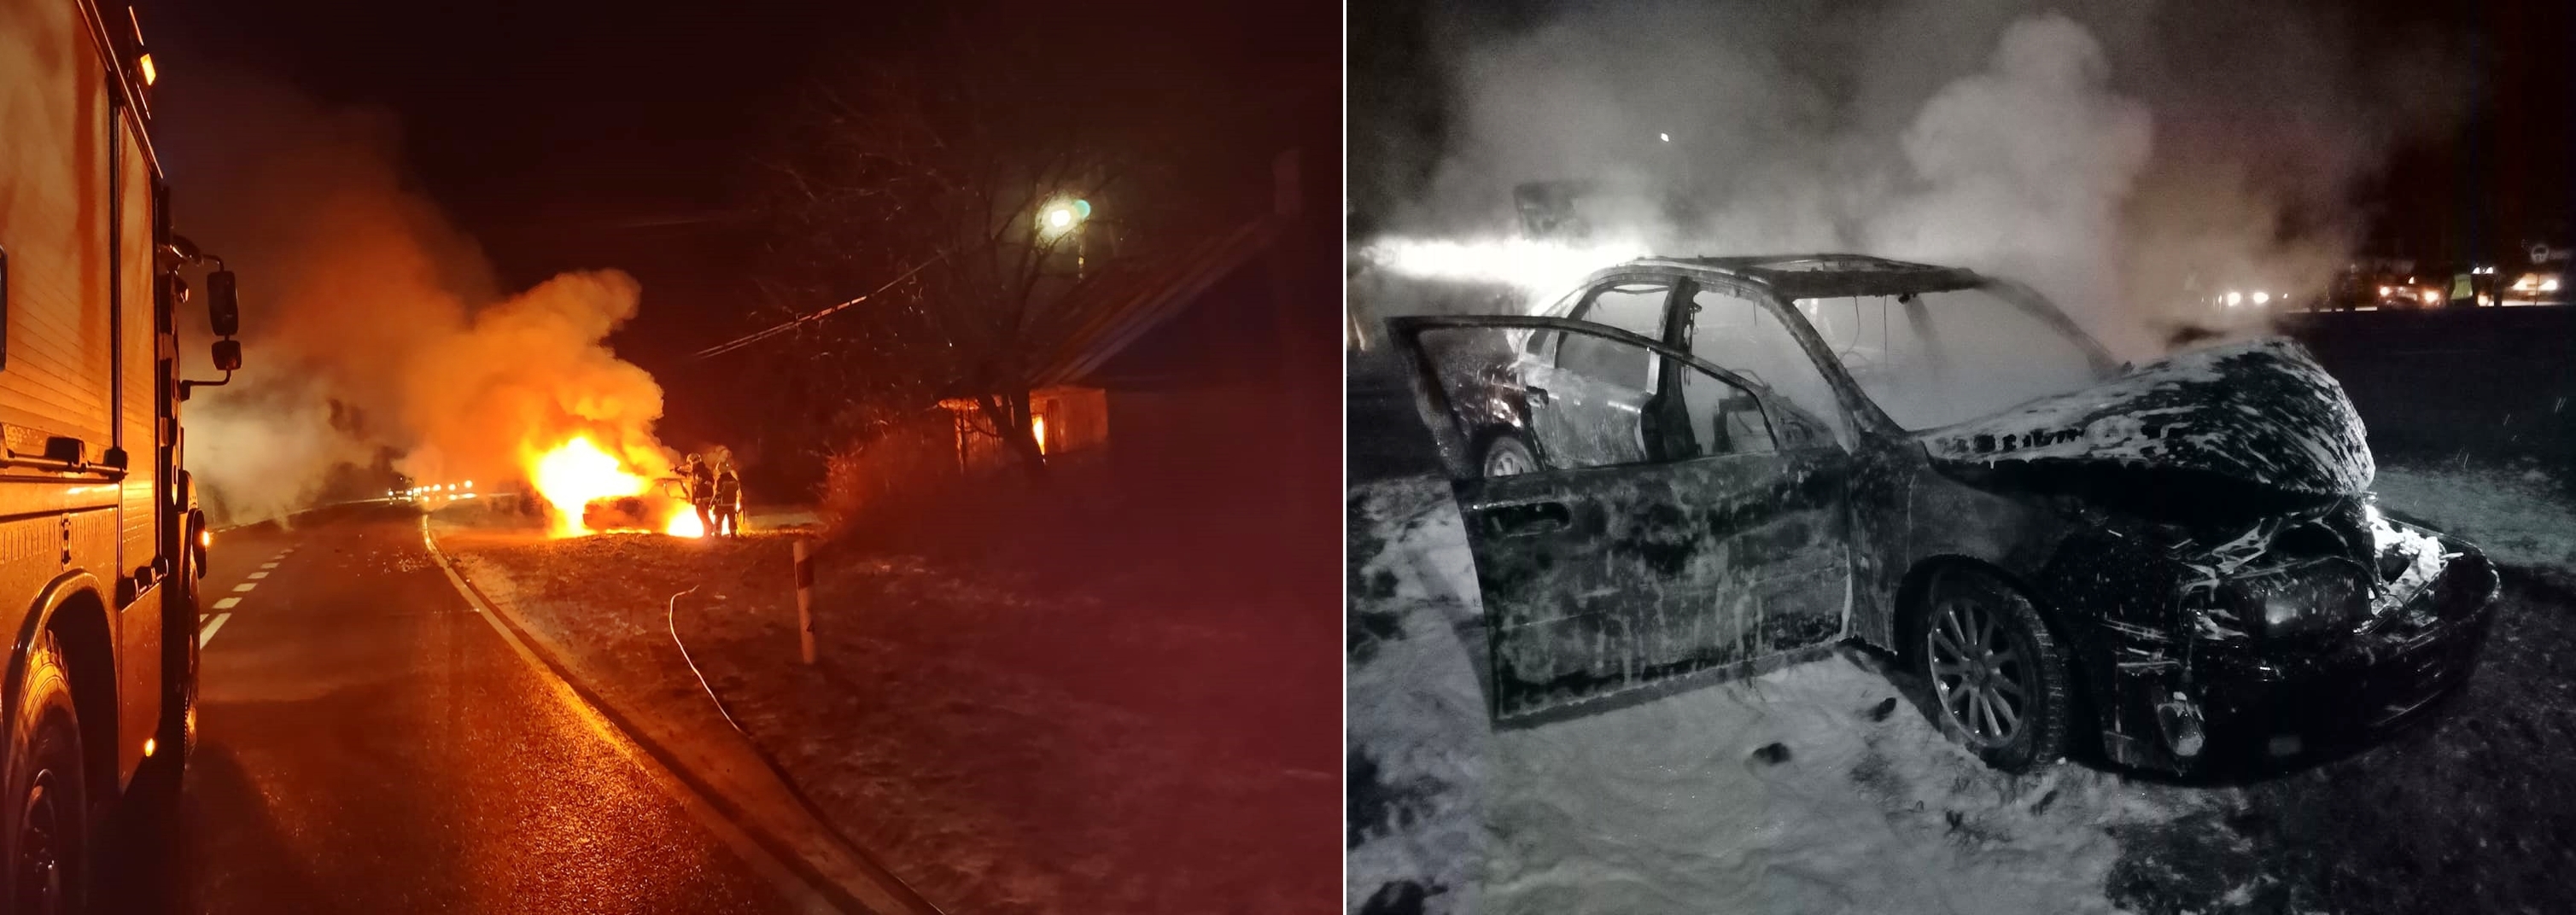 3 lutego 2022 roku w miejscowości Głuchów (gm. Mordy) doszło do pożaru samochodu osobowego, po uprzednim zderzeniu z drugim pojazdem.